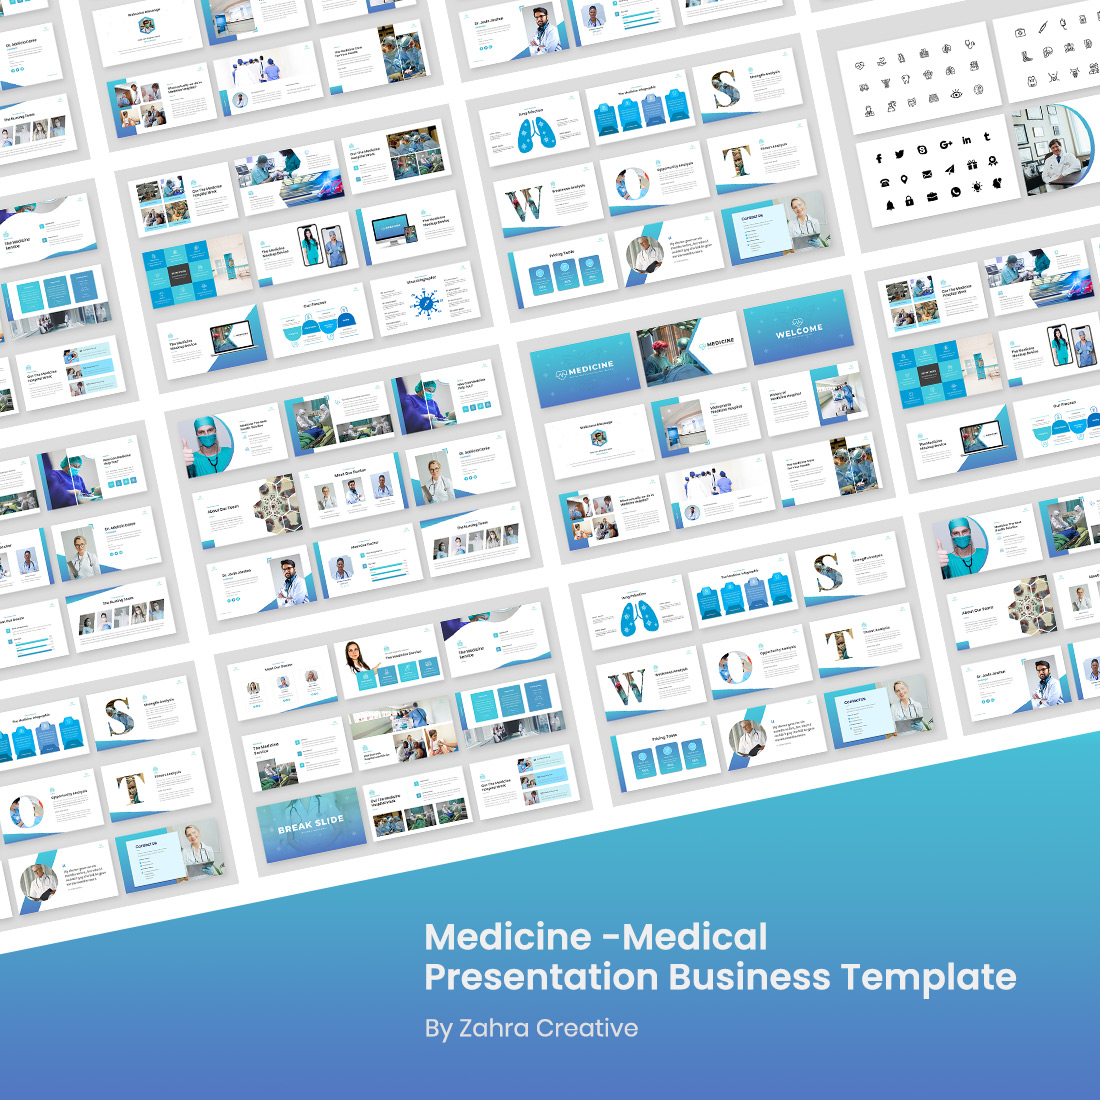 Medicine Presentation Business Google Slides Template cover image.